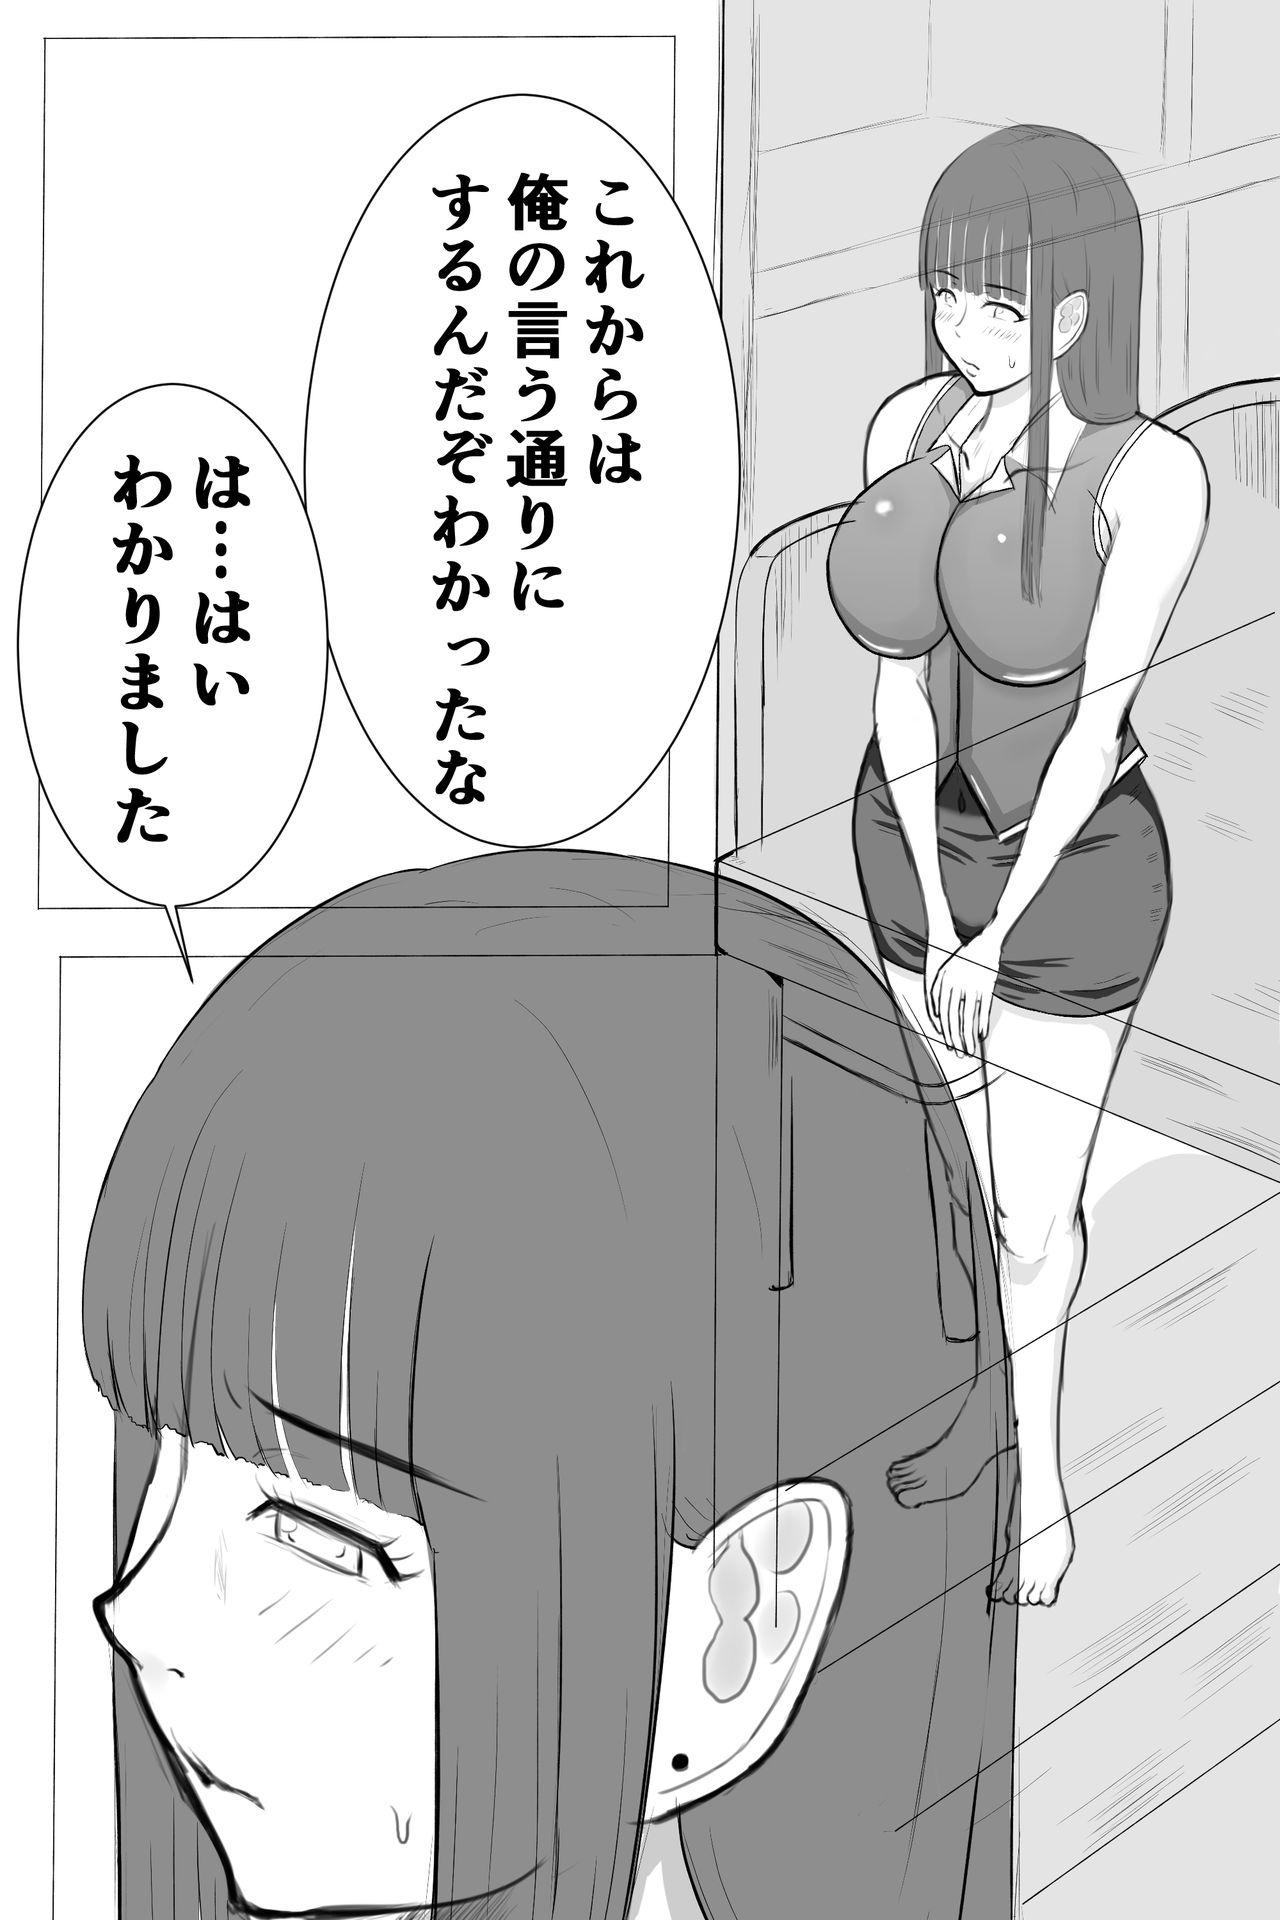 Dicks Misako-san... And - Page 4